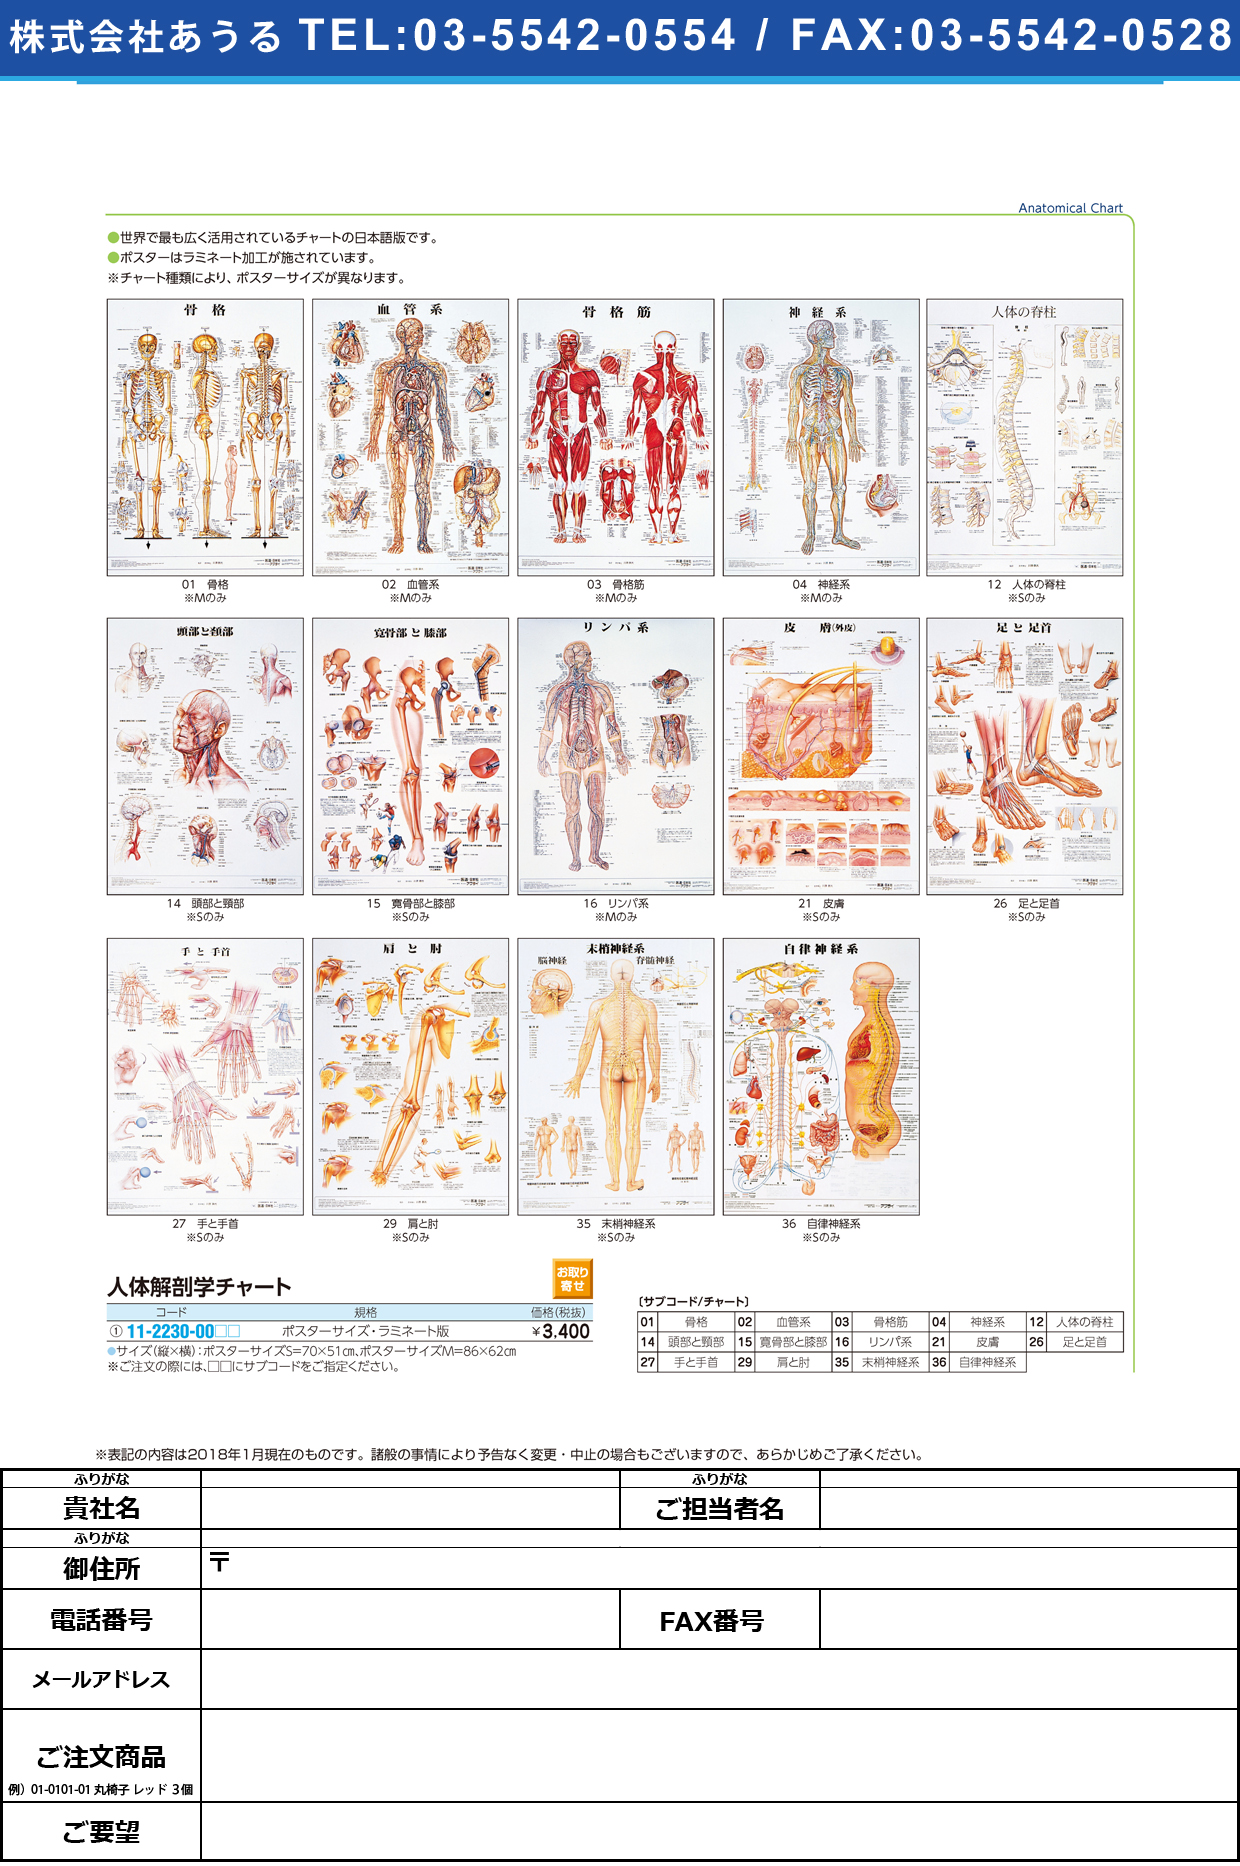 (11-2230-00)人体解剖学チャート（ポスターサイズ） ﾗﾐﾈｰﾄﾊﾞﾝ ｼﾞﾝﾀｲｶｲﾎﾞｳｶﾞｸﾁｬｰﾄ 骨格Ｍ(京都科学)【1枚単位】【2019年カタログ商品】